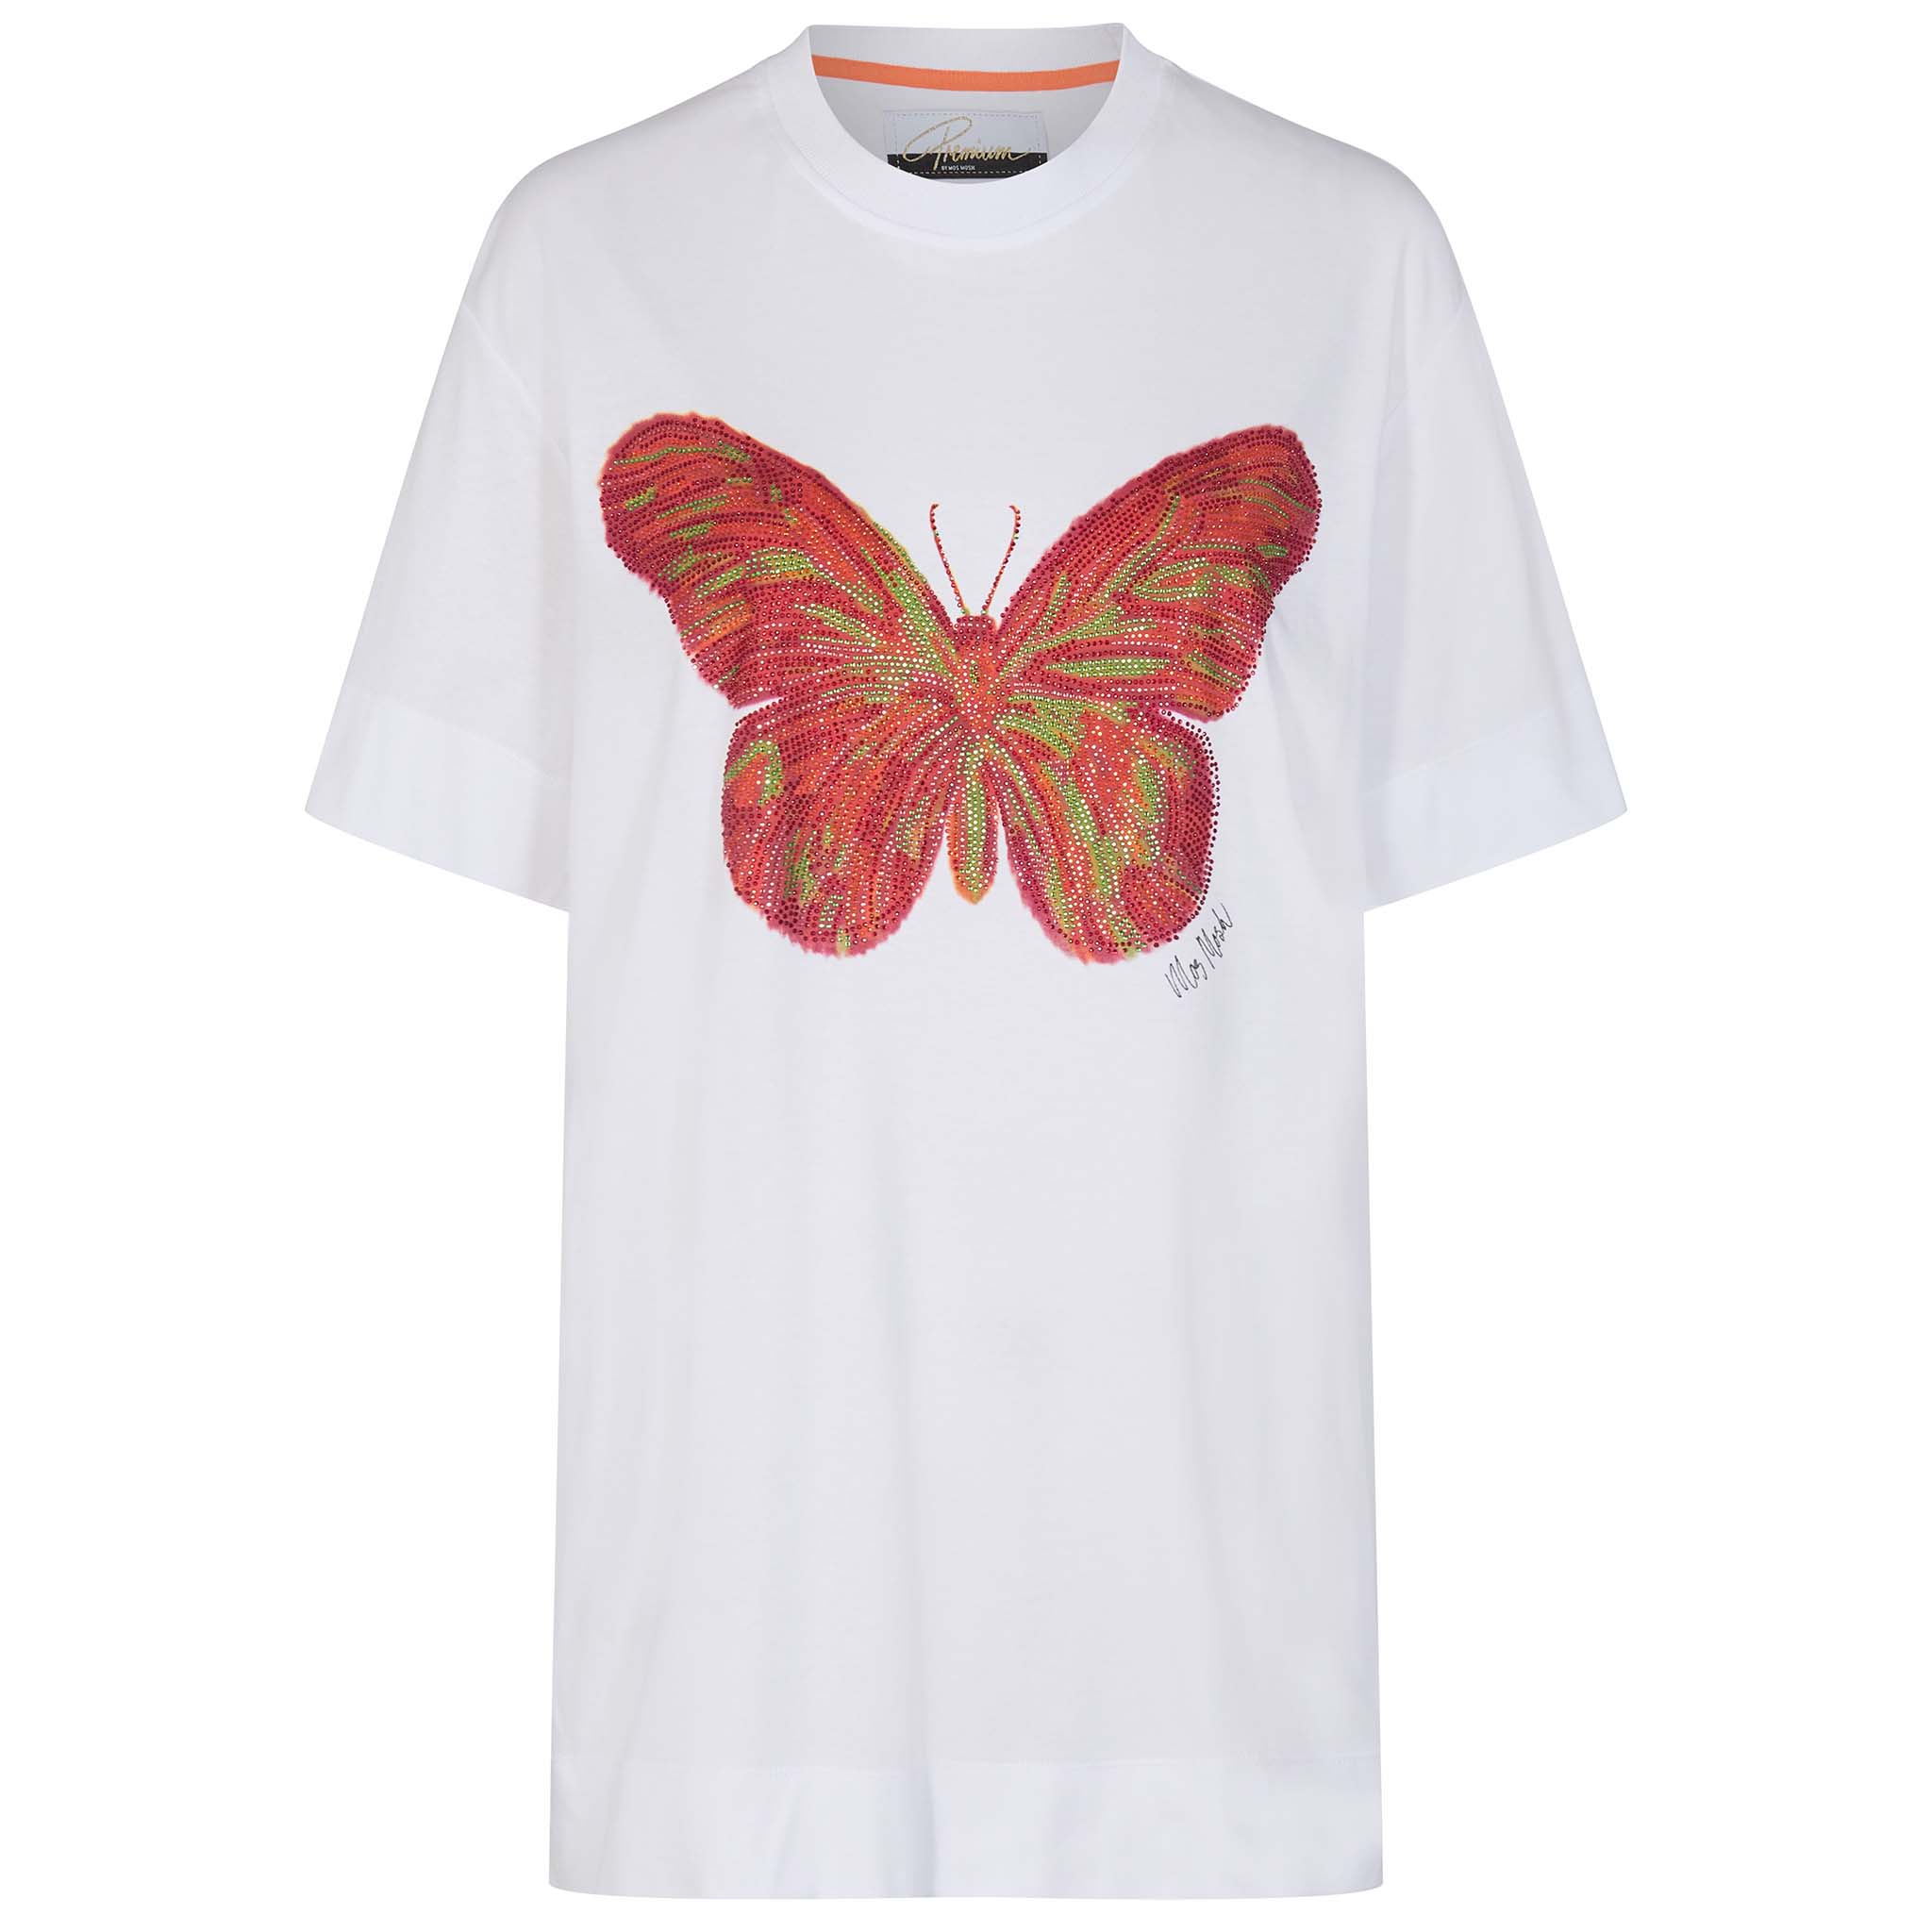 Mos Mosh, valkoinen, väljä T-paita. Edessä iso, strassein koristeltu perhospainatus.